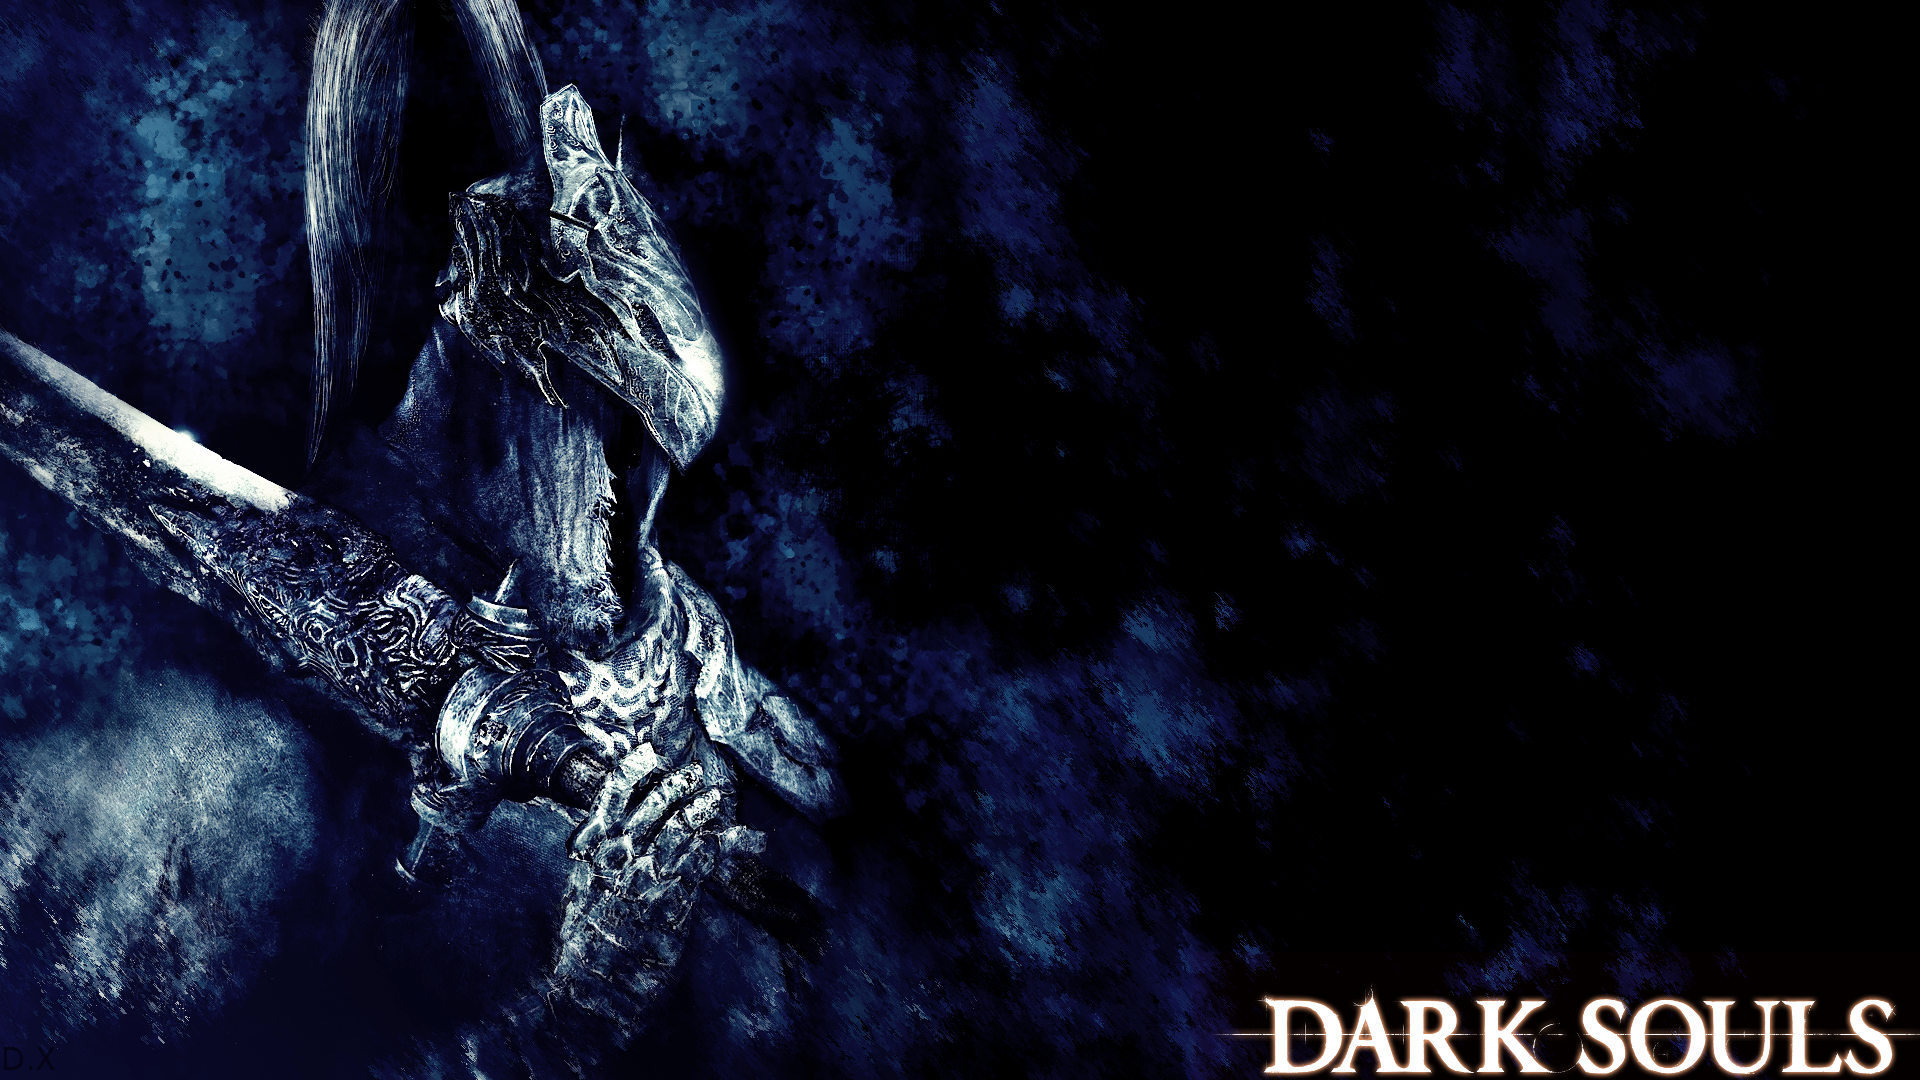 HD wallpaper Dark Souls Artorias Dark Souls Forest Knight  Wallpaper  Flare